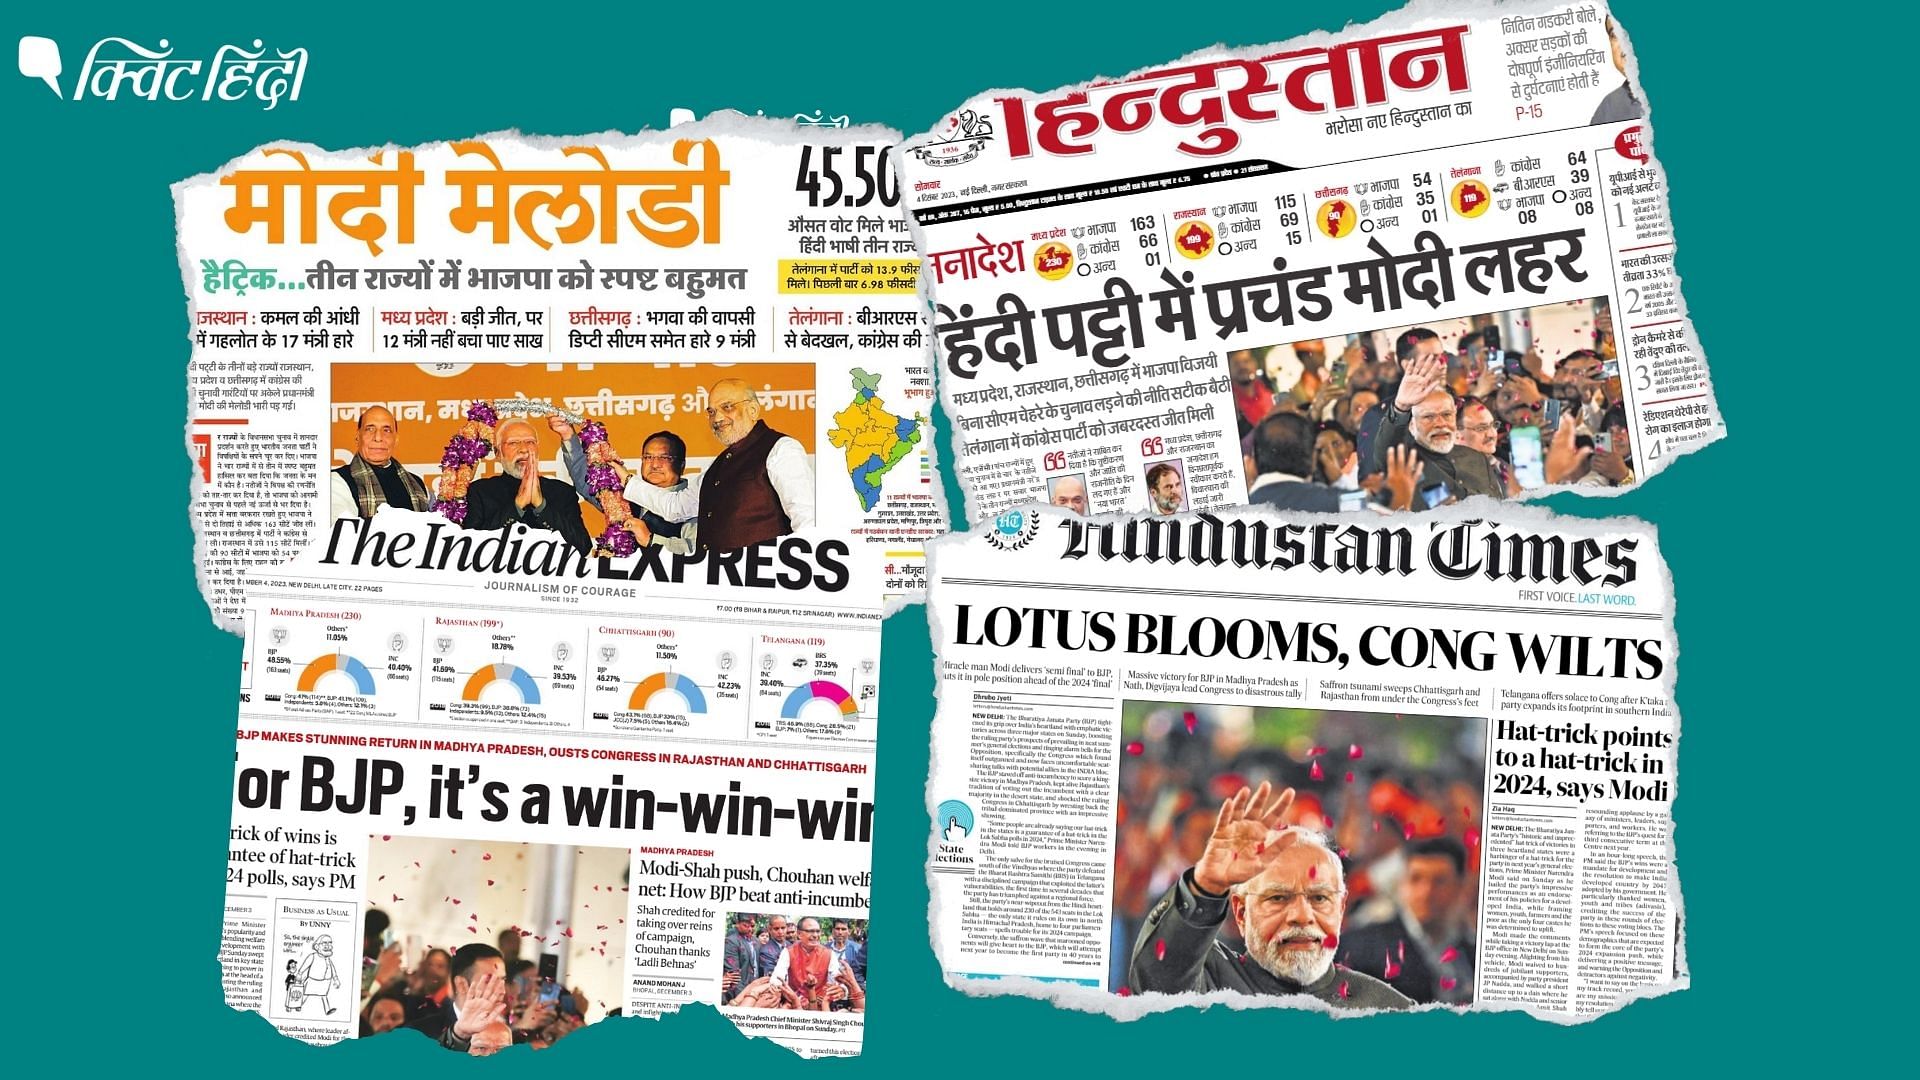 <div class="paragraphs"><p>"मोदी मेलोडी" MP-राजस्थान-छत्तीसगढ़ में BJP की जीत पर प्रमुख अखबारों ने क्या लिखा?</p></div>